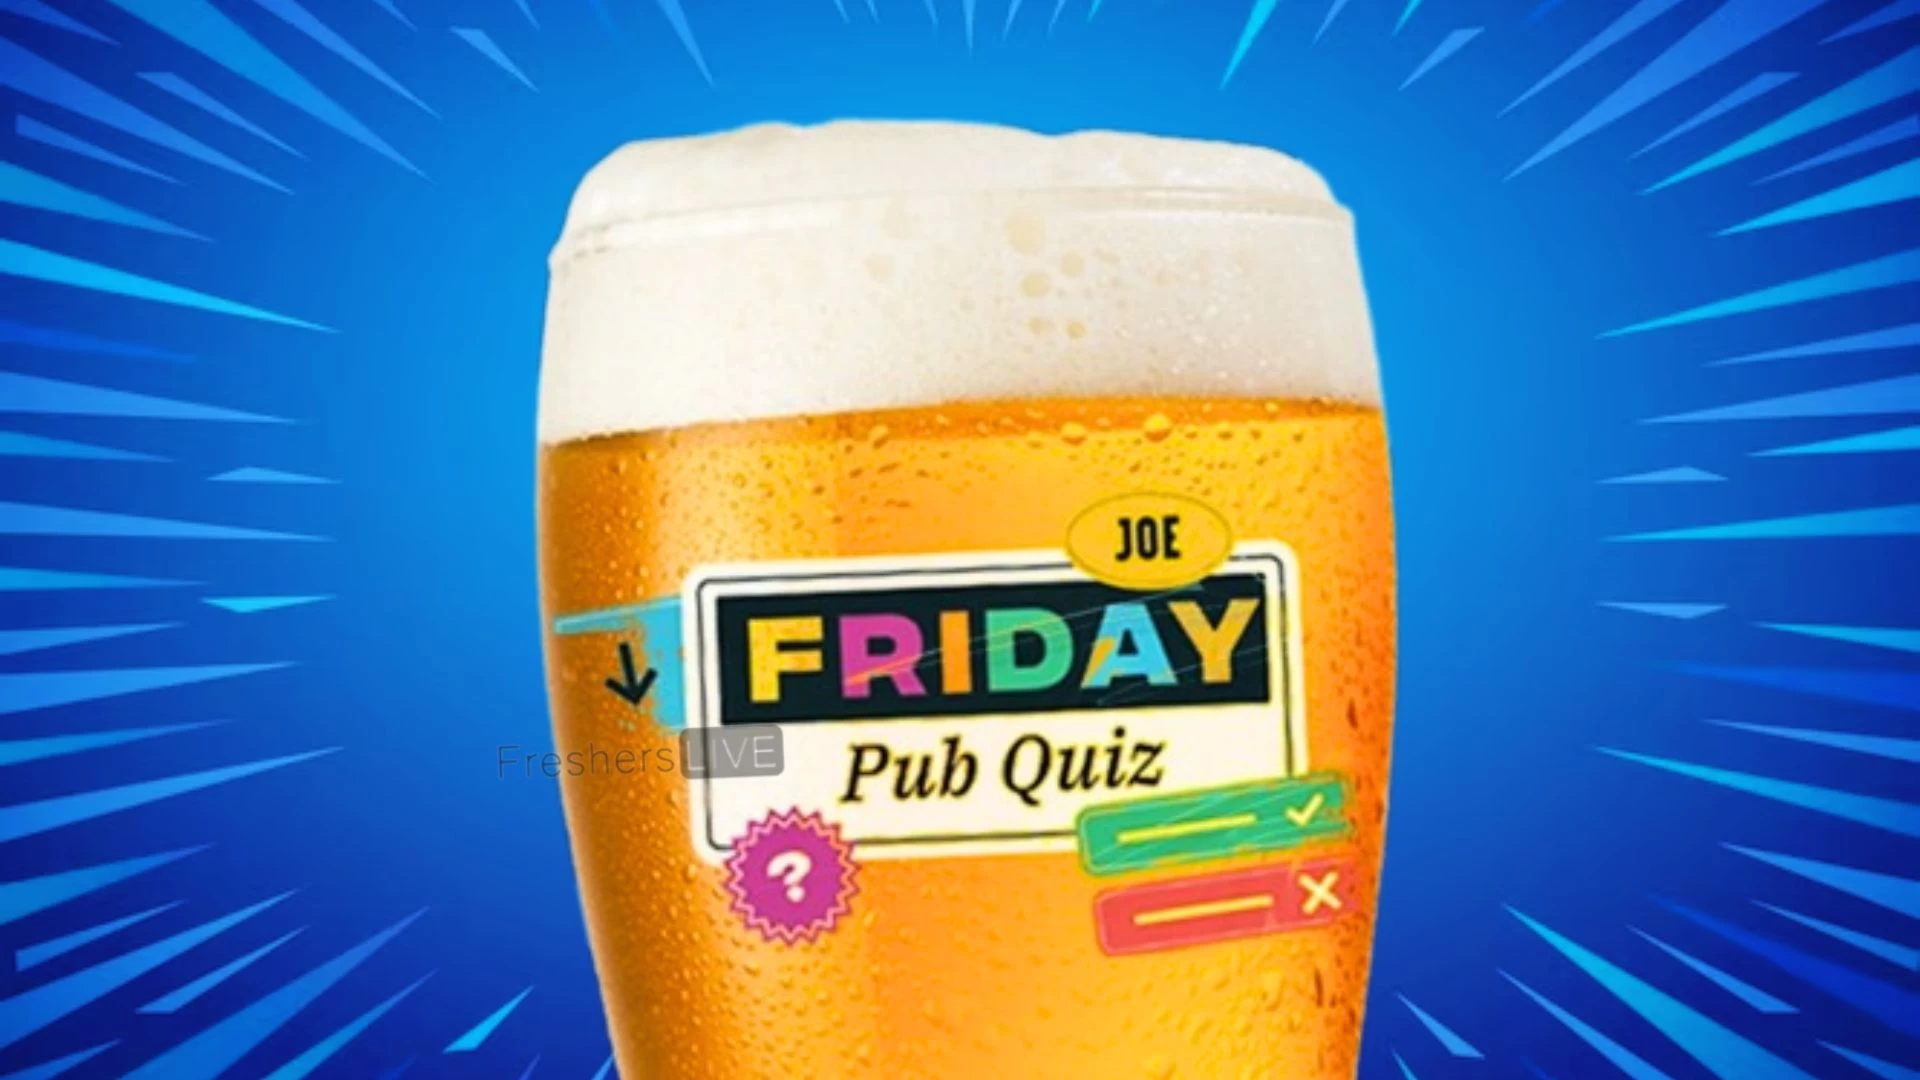 Joe Friday Pub Quiz Week 367: ¡Pon a prueba tus conocimientos generales!